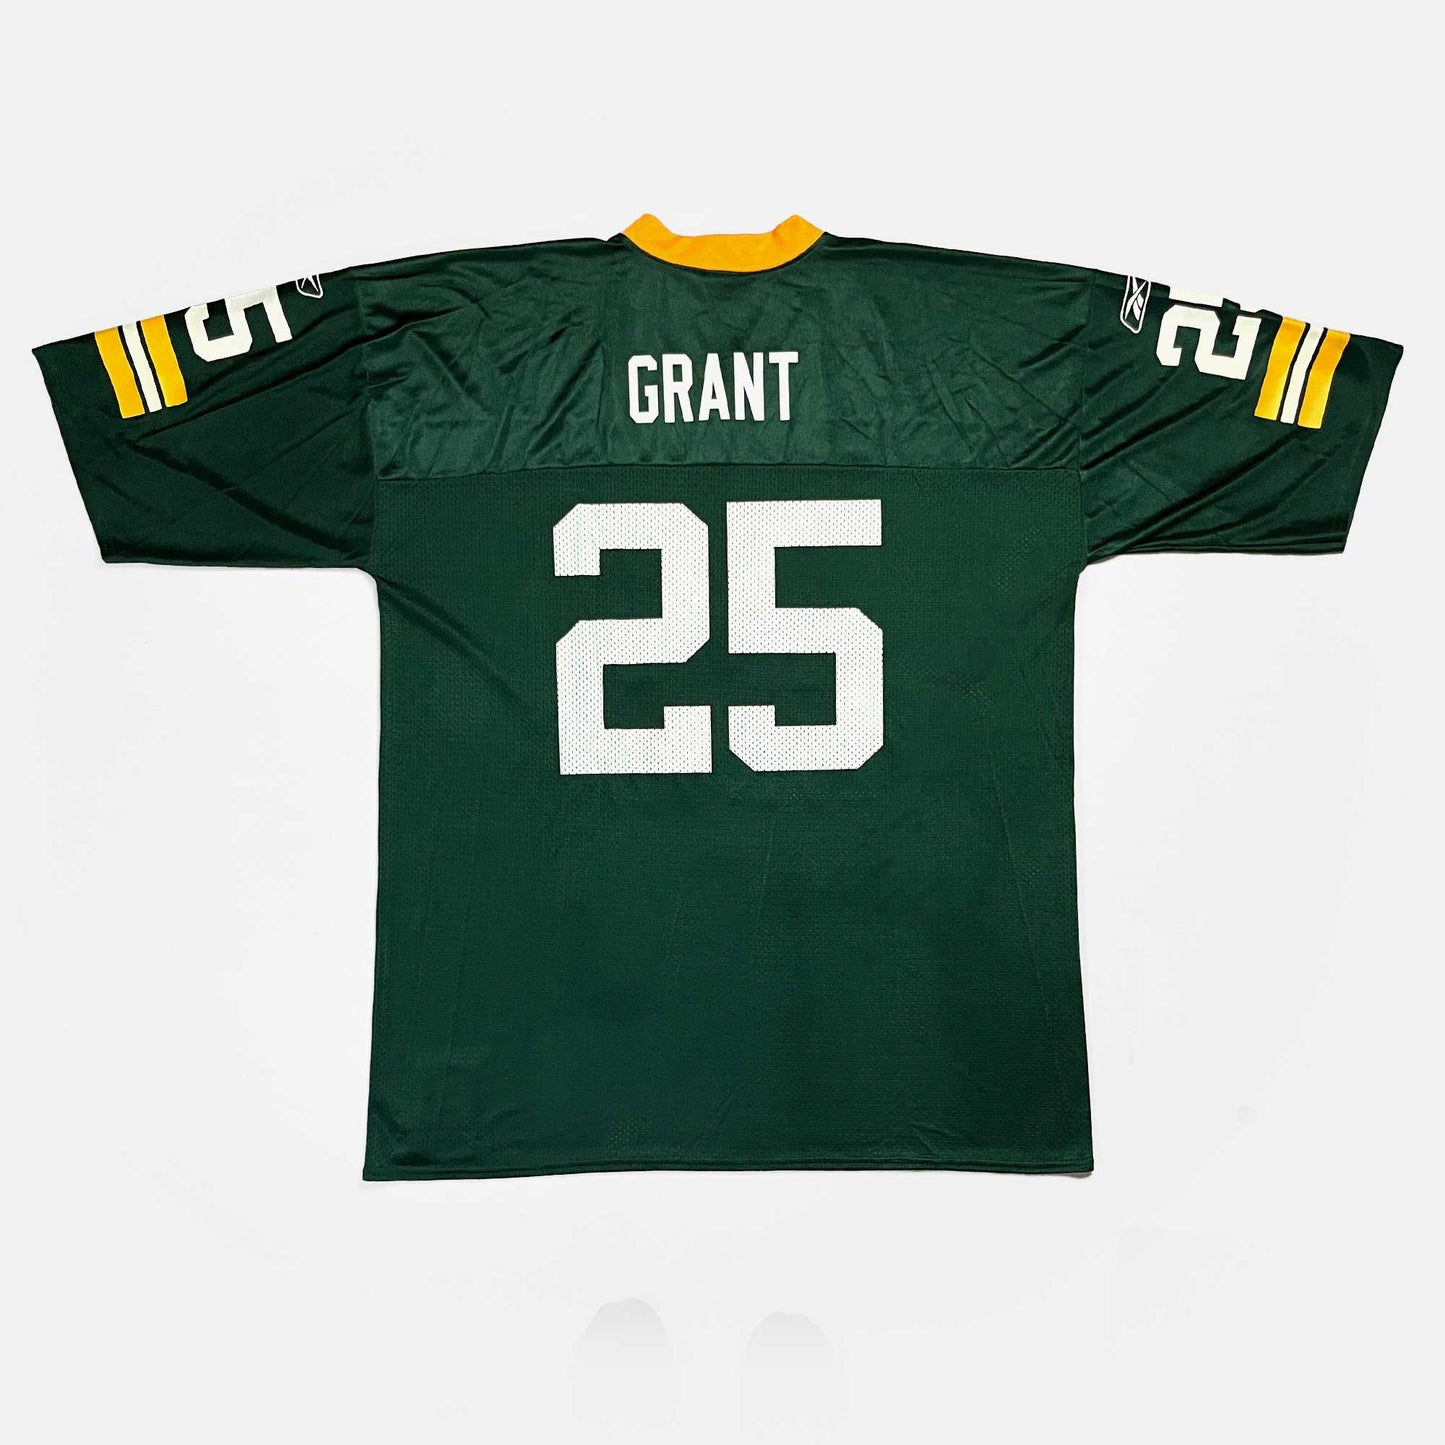 Green Bay Packers - Ryan Grant - Größe XXL - Reebok - NFL Trikot